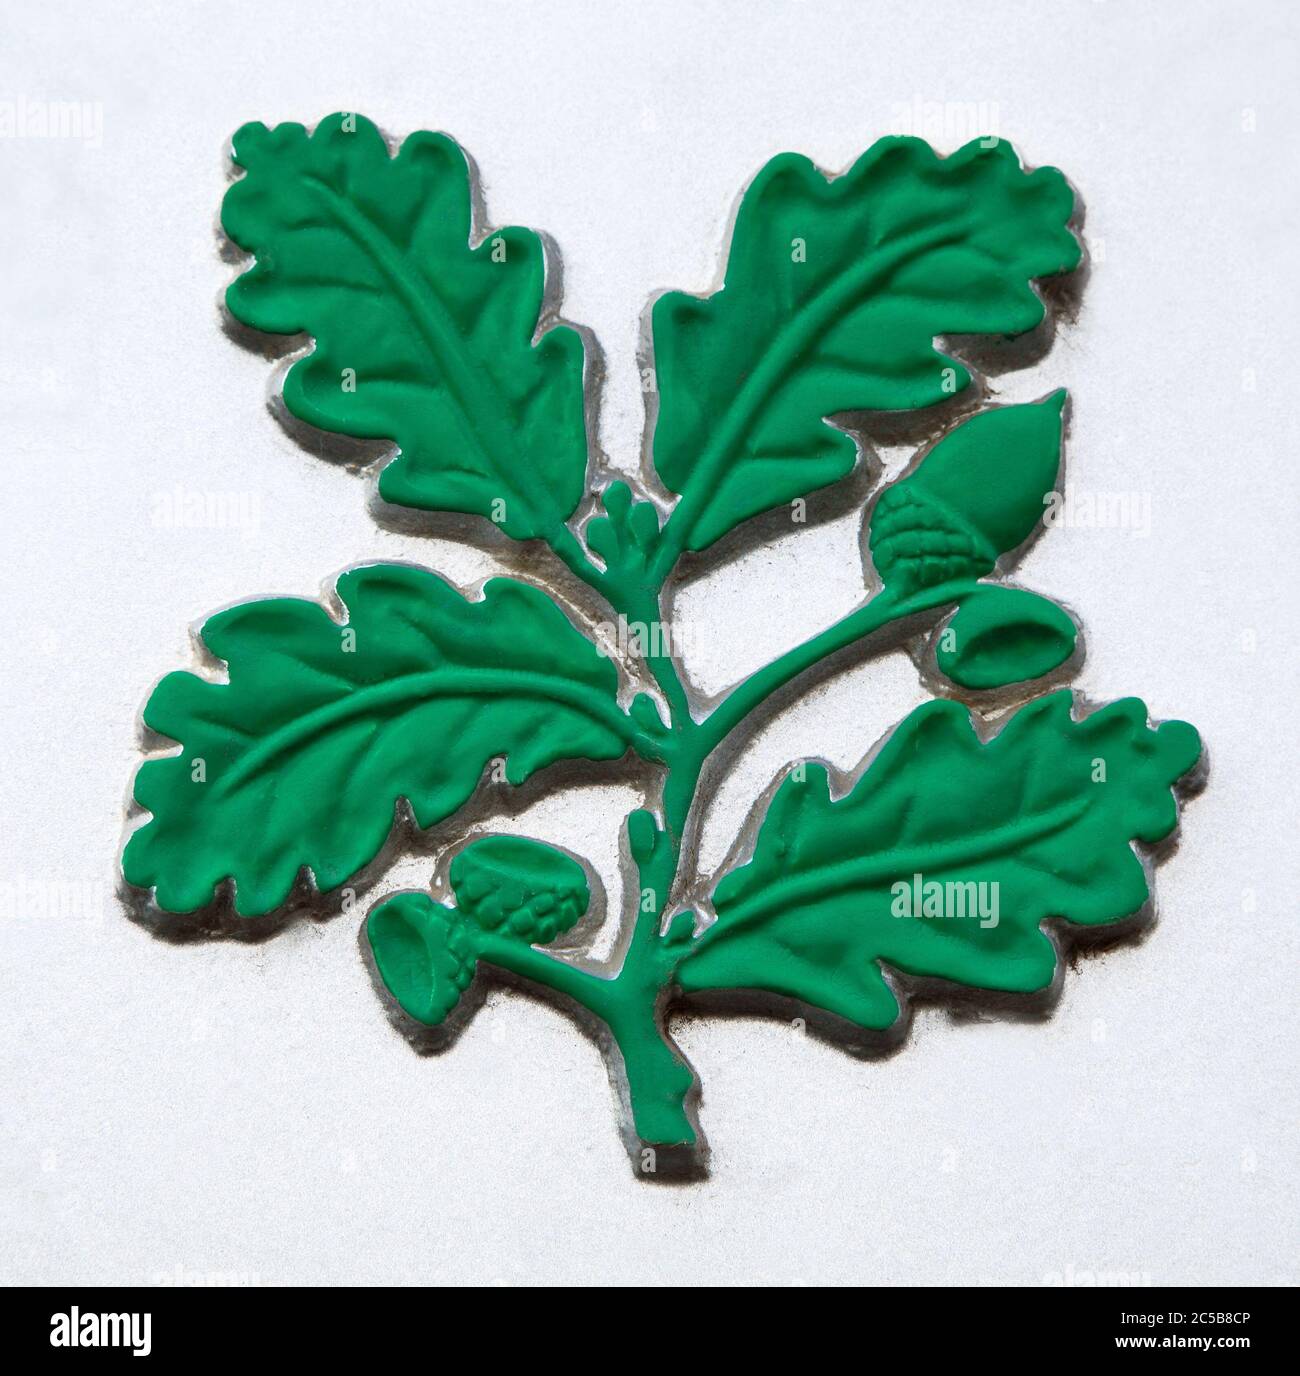 National Trust, logo, detail, green, oak leaves, acorns Stock Photo